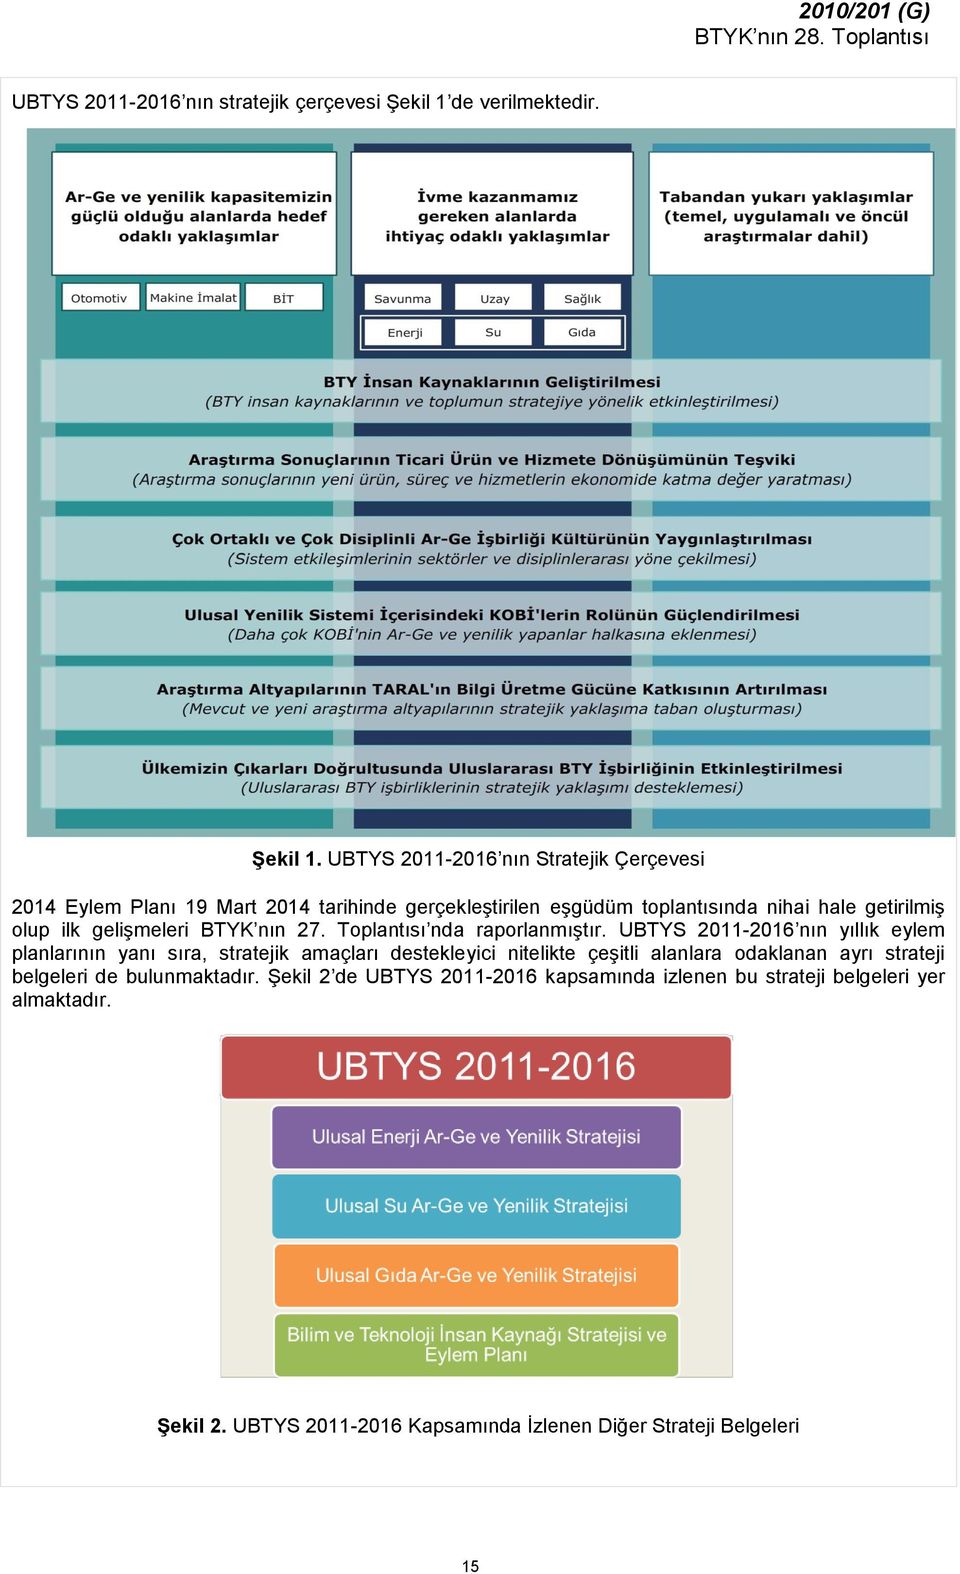 UBTYS 2011-2016 nın Stratejik Çerçevesi 2014 Eylem Planı 19 Mart 2014 tarihinde gerçekleştirilen eşgüdüm toplantısında nihai hale getirilmiş olup ilk